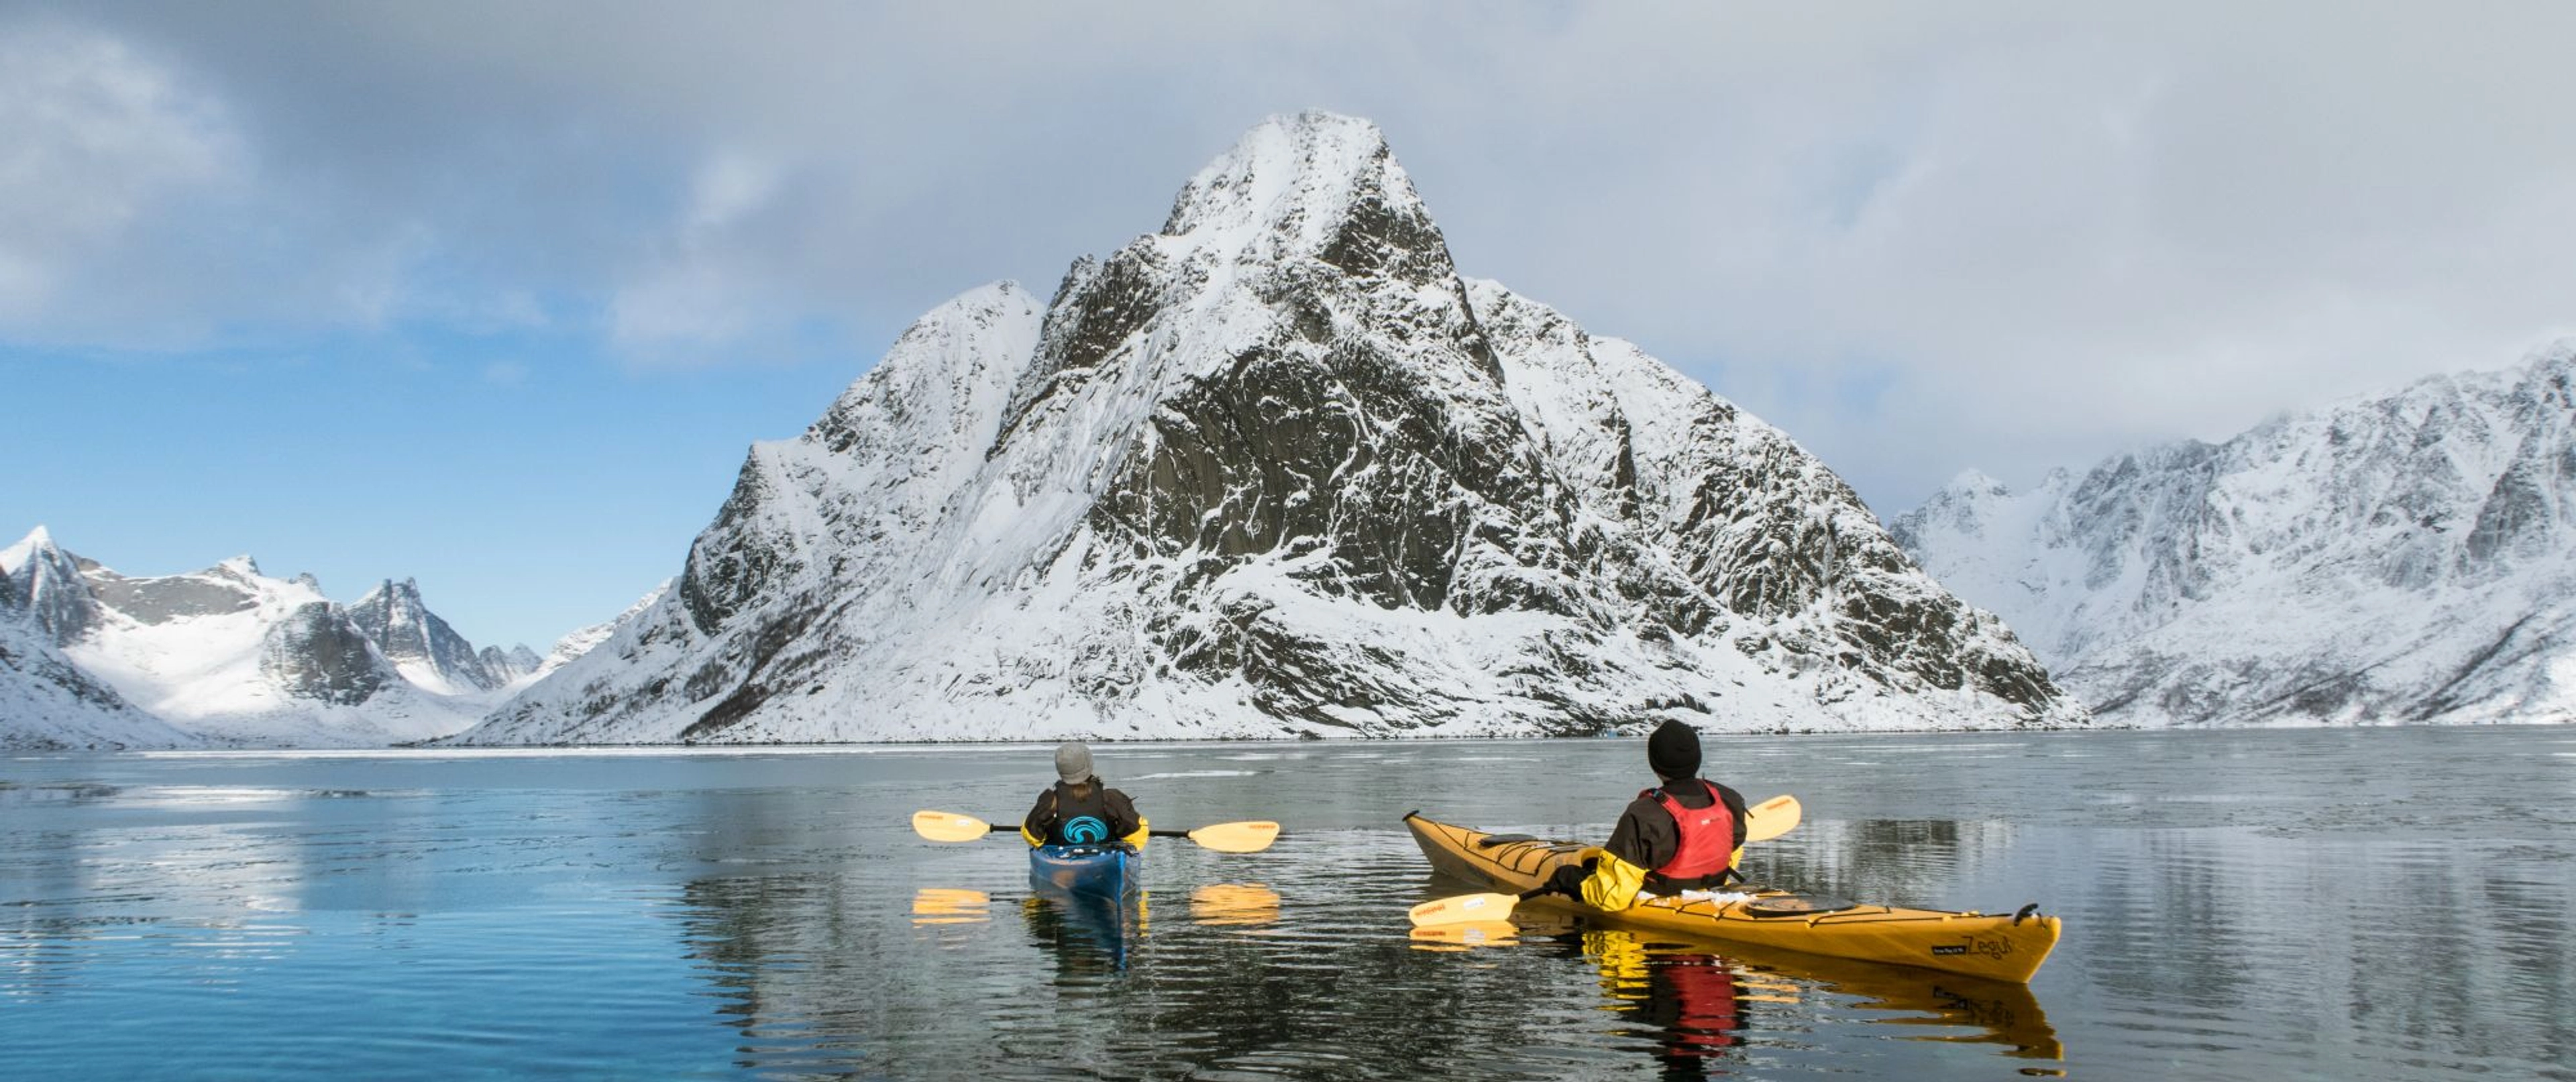 Winter-Kajaktour in Reine – Lofoten-Inseln, Norwegen